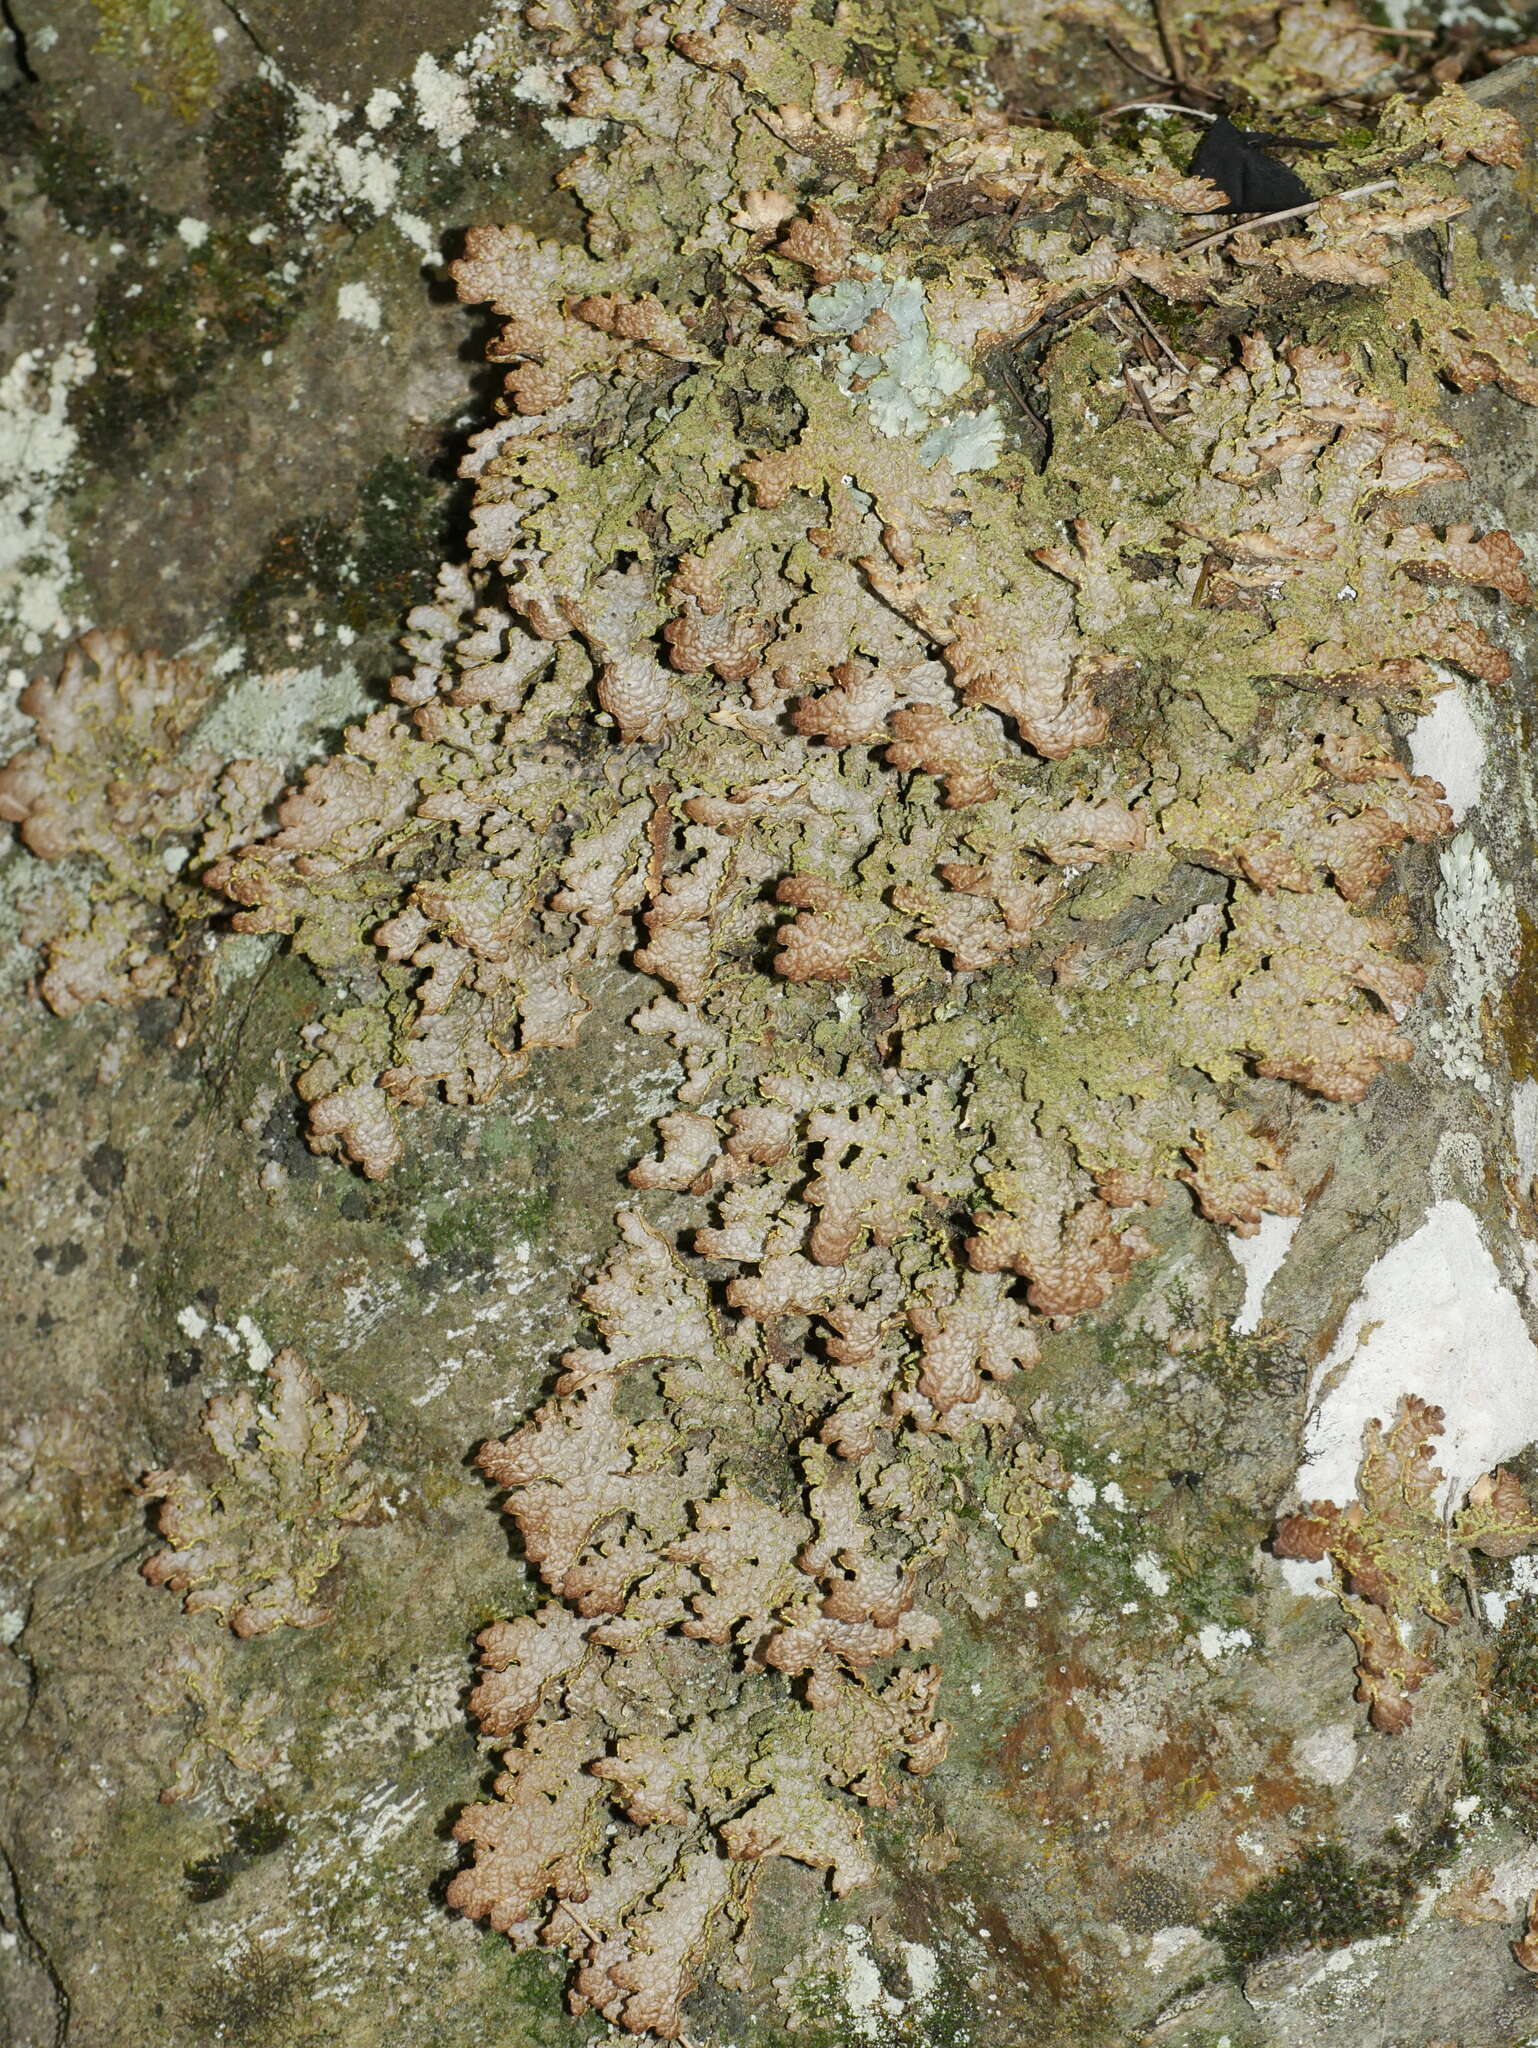 Image de Pseudocyphellaria neglecta (Müll. Arg.) H. Magn.